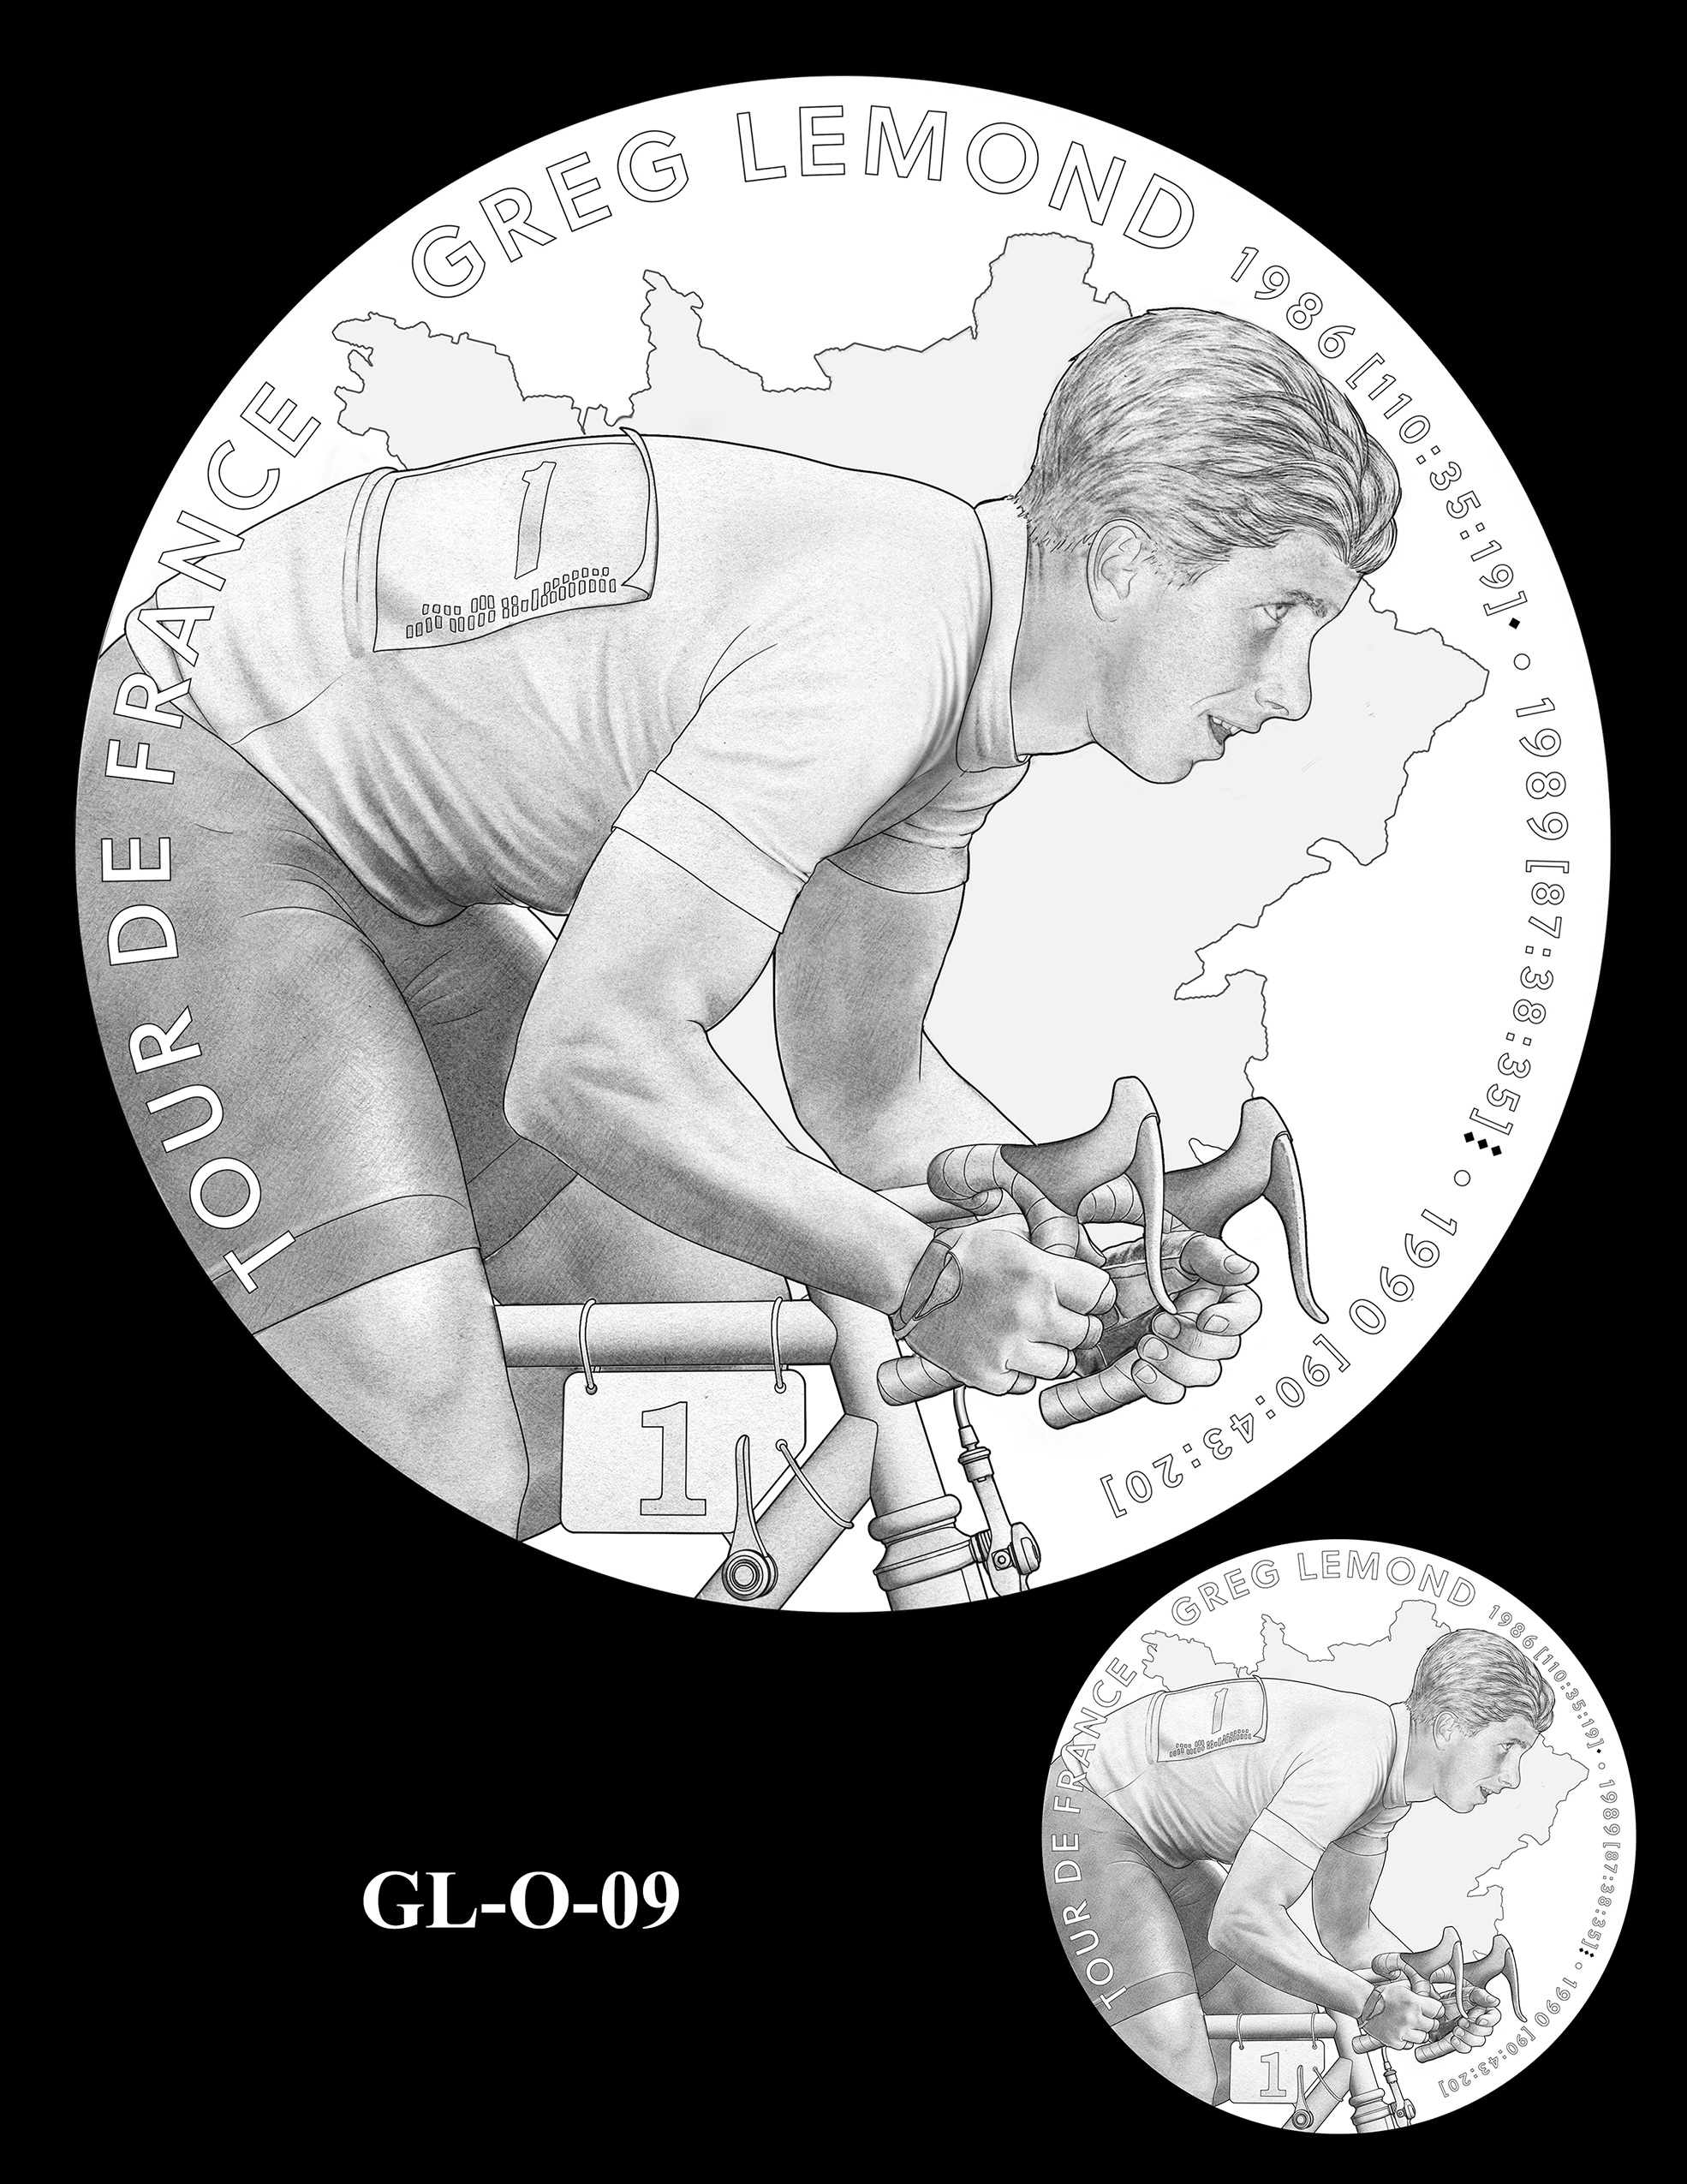 GL-O-09 -- Greg LeMond Congressional Gold Medal